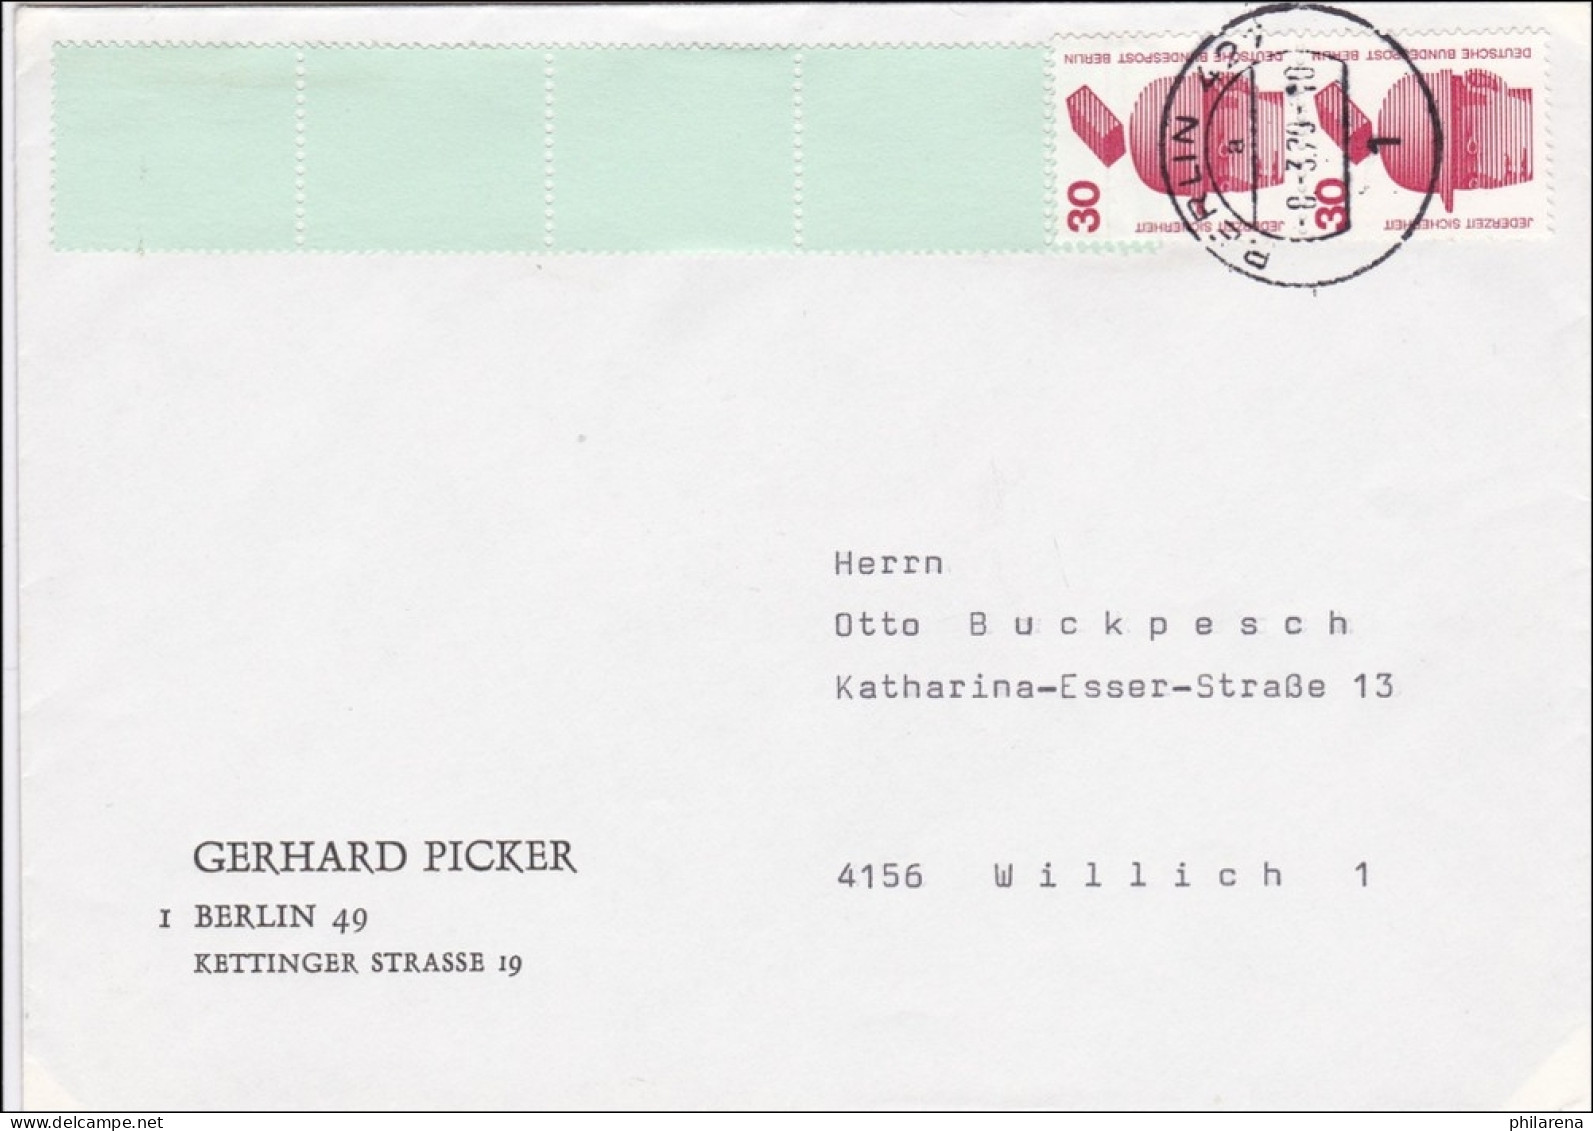 Brief 1979 Nach Willich Mit Rollenendstreifen - Covers & Documents